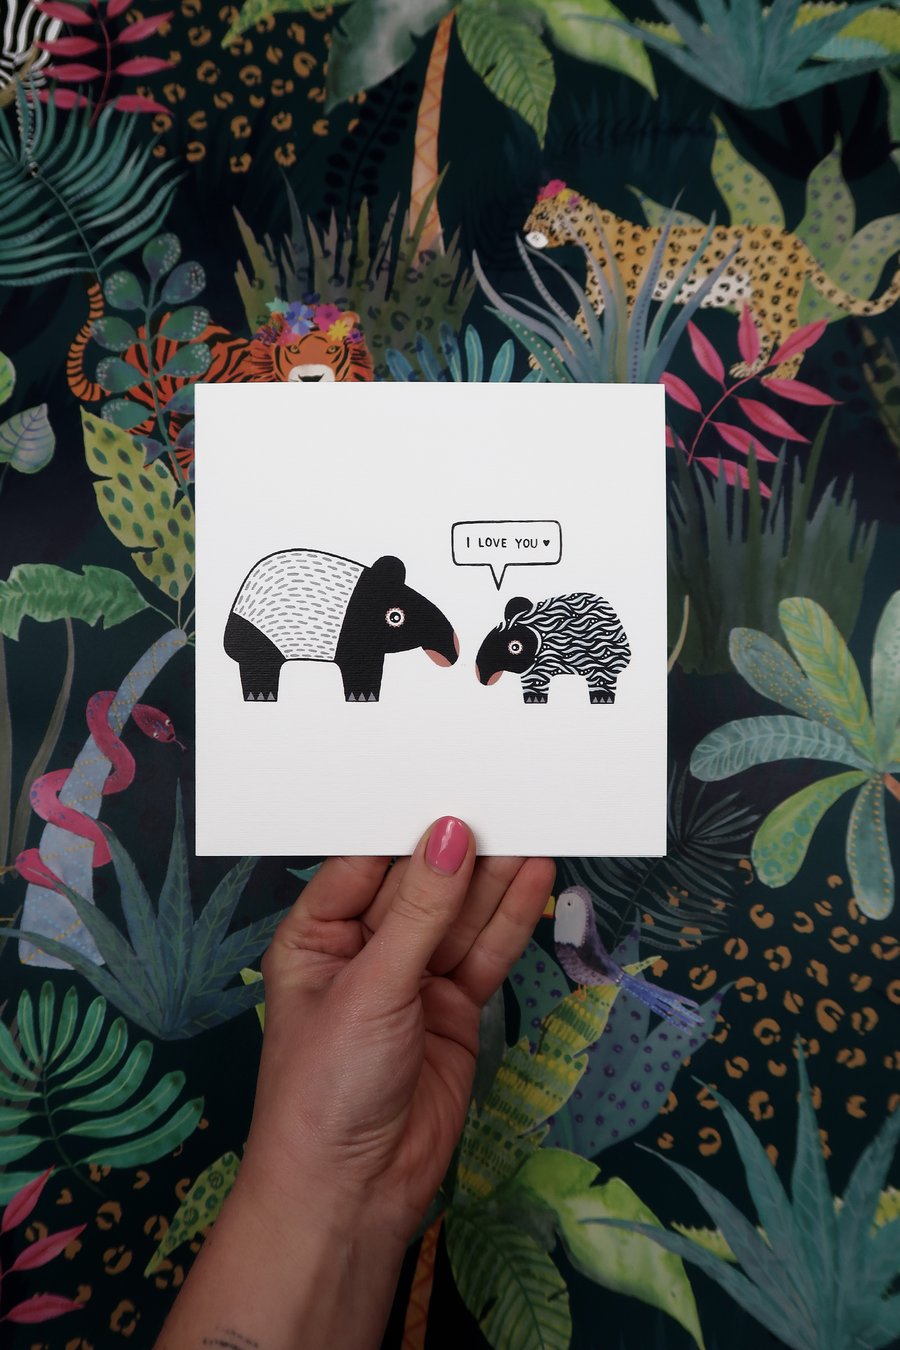 I LOVE YOU malayan tapir card.